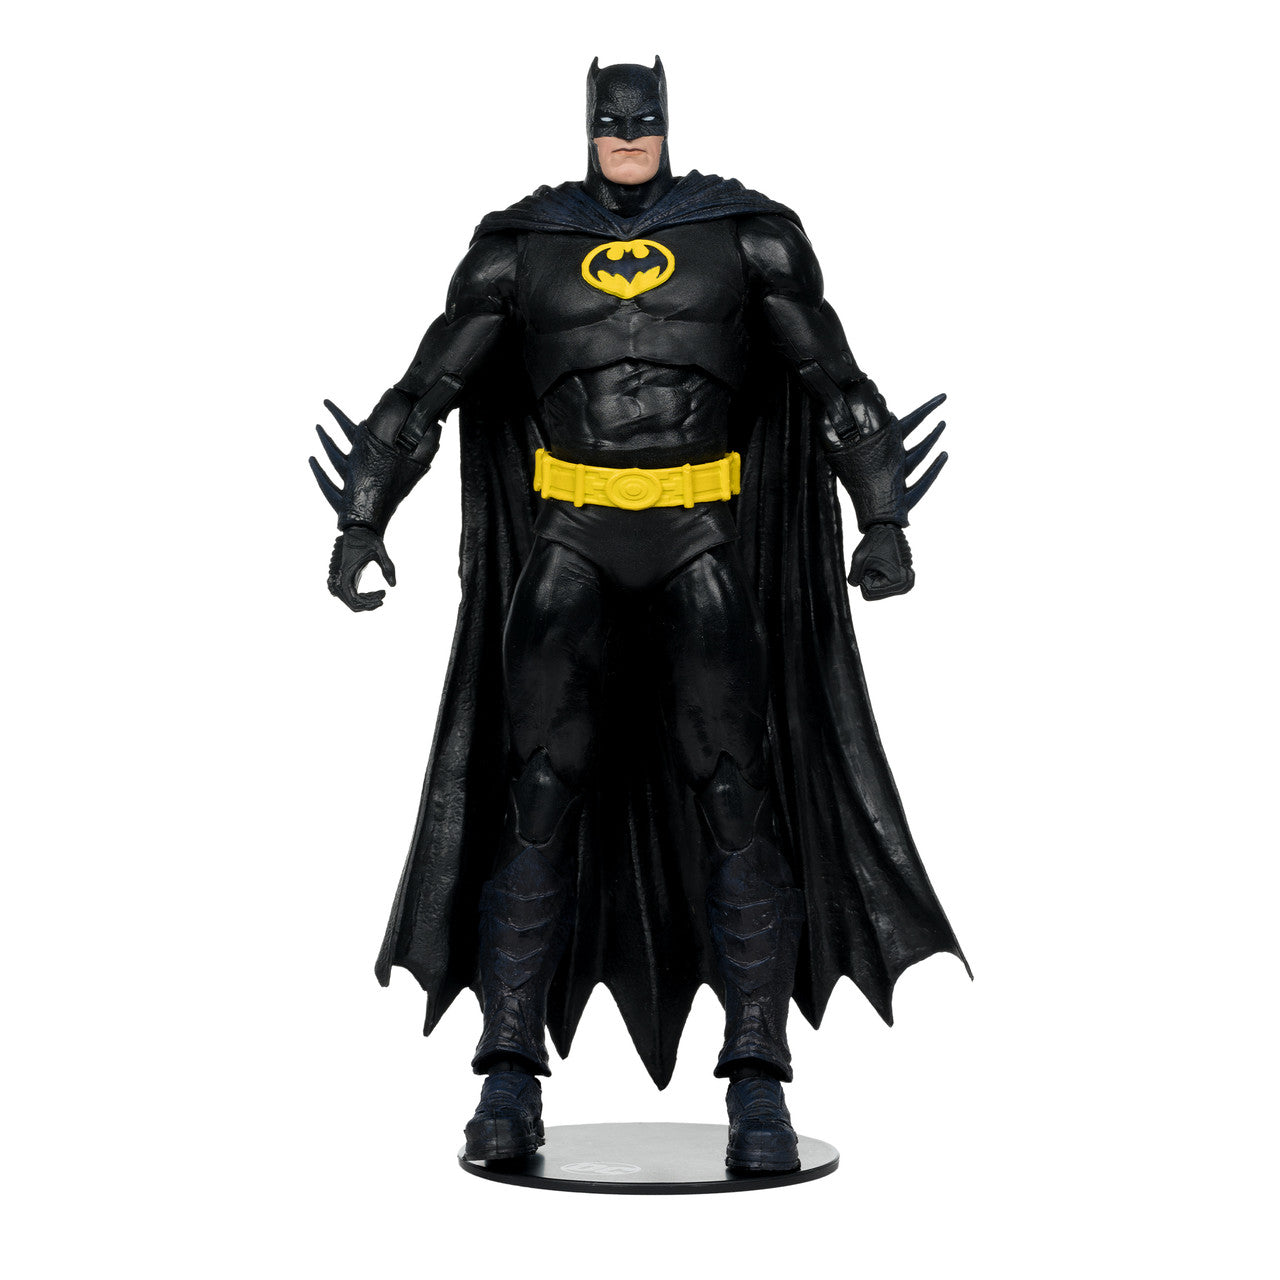 Batman (JLA) 7" Build-A-Figure BY MCFARLANE